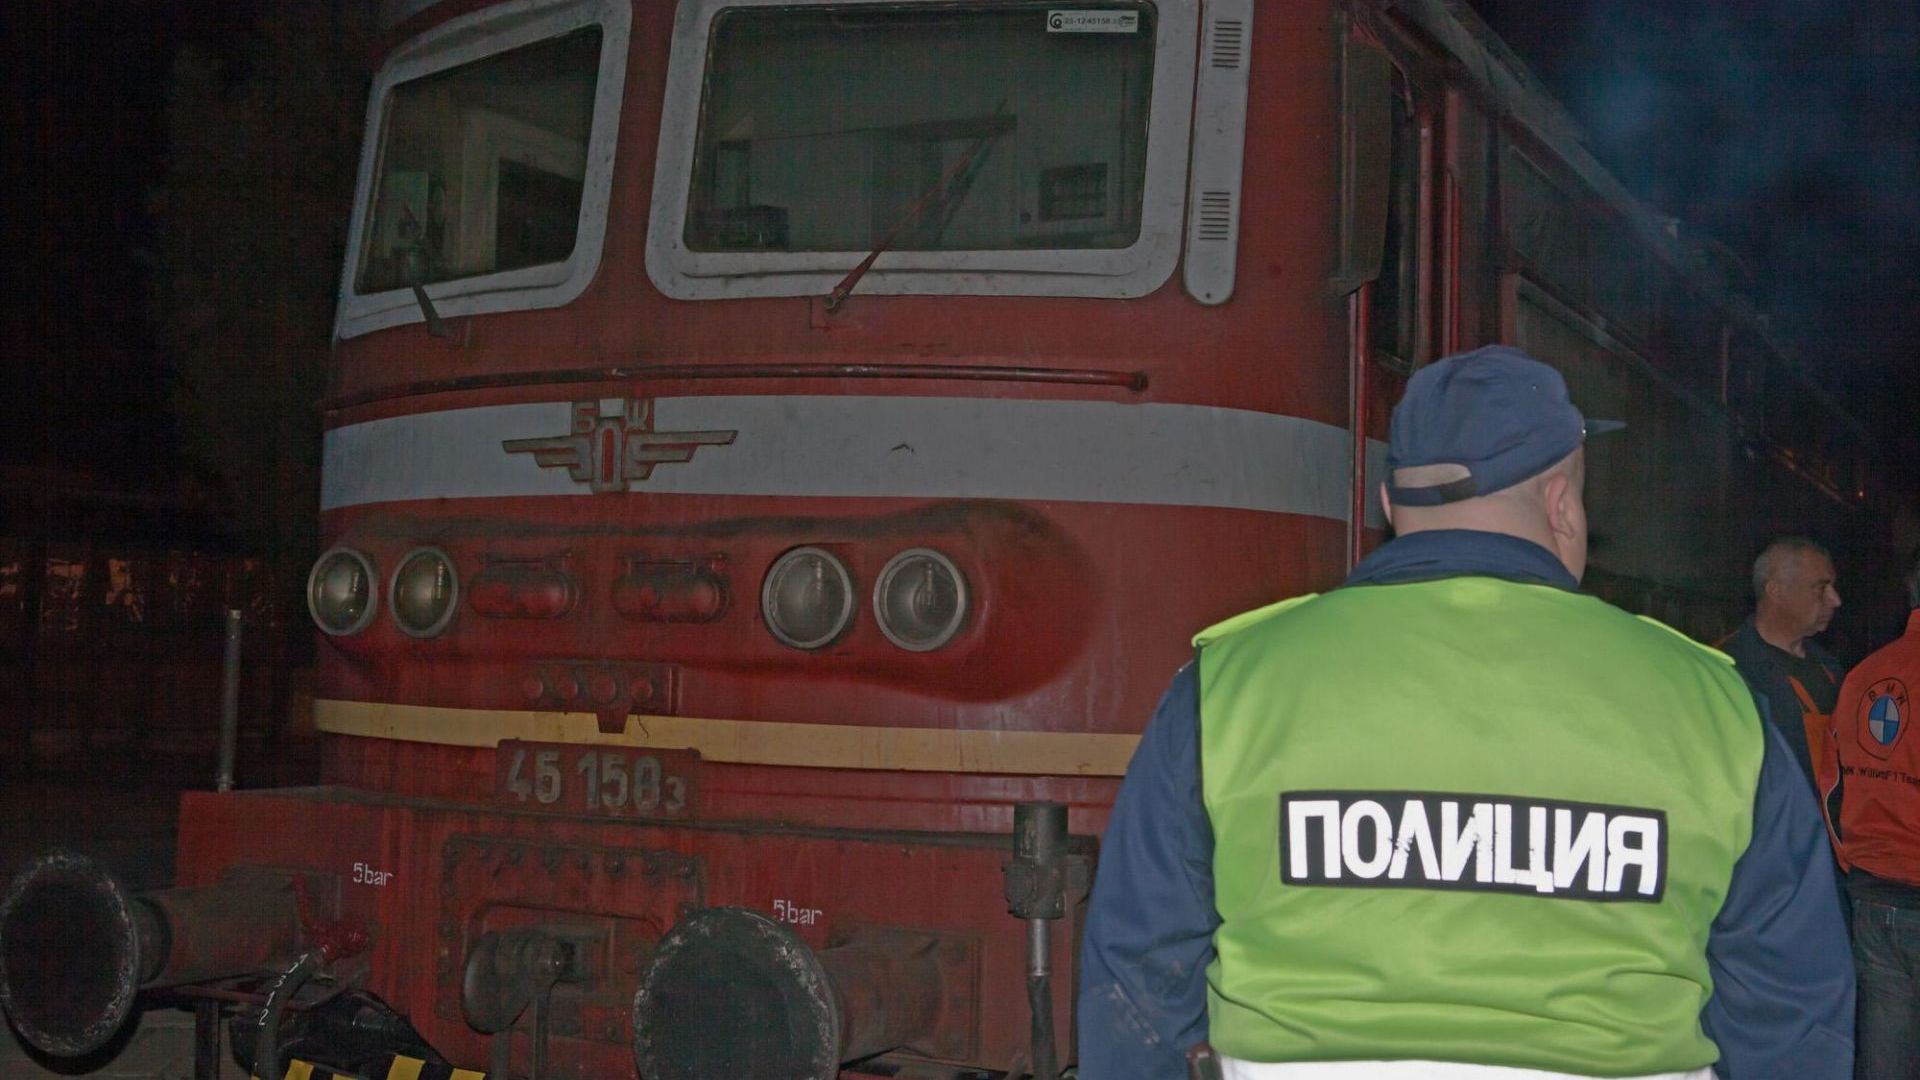 Локомотив на пътнически влак по направлението София Русе избухнал в пламъци